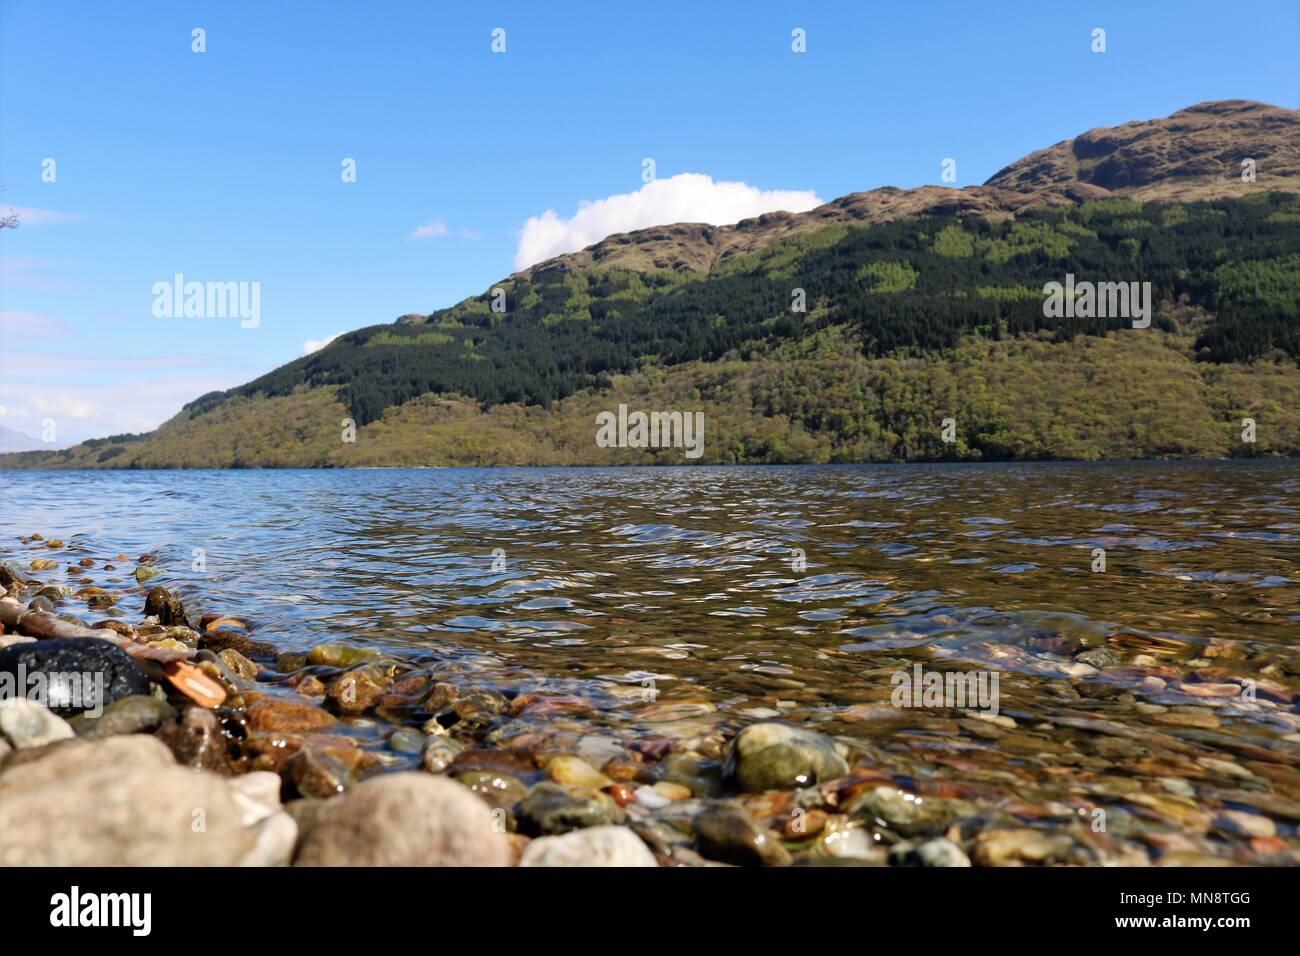 Magnifique Loch Lomond, Ecosse, ROYAUME UNI sur une journée ensoleillée claire montrant l'eau et montagnes dans une vue à couper le souffle. Une attraction touristique populaire. Banque D'Images